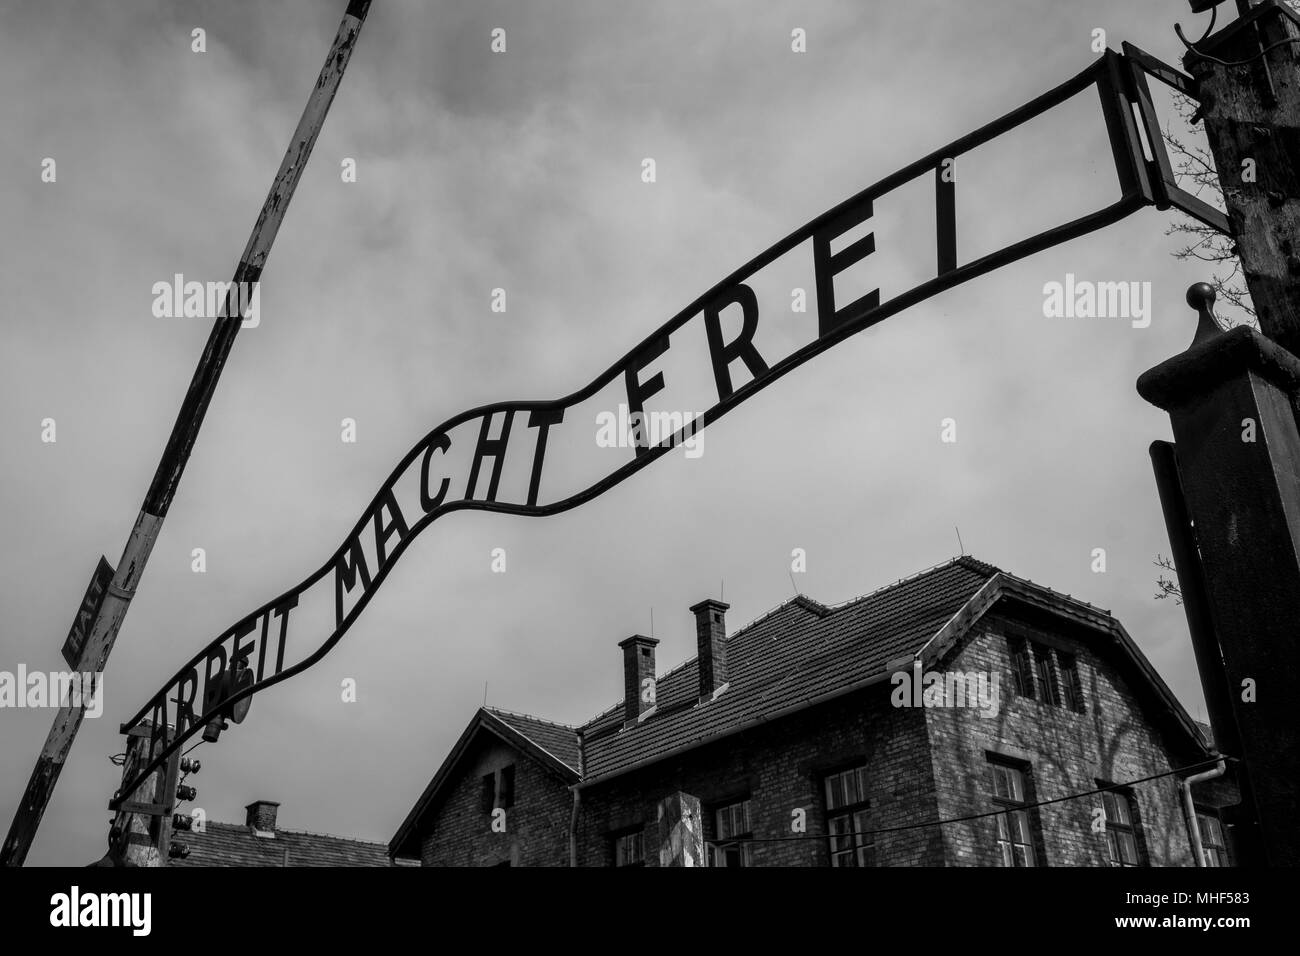 Auschwitz, Polen. Eintritt in die NS-Konzentrationslager Auschwitz 1 zeigt das Schild, Arbeit macht frei - Arbeit macht frei Stockfoto